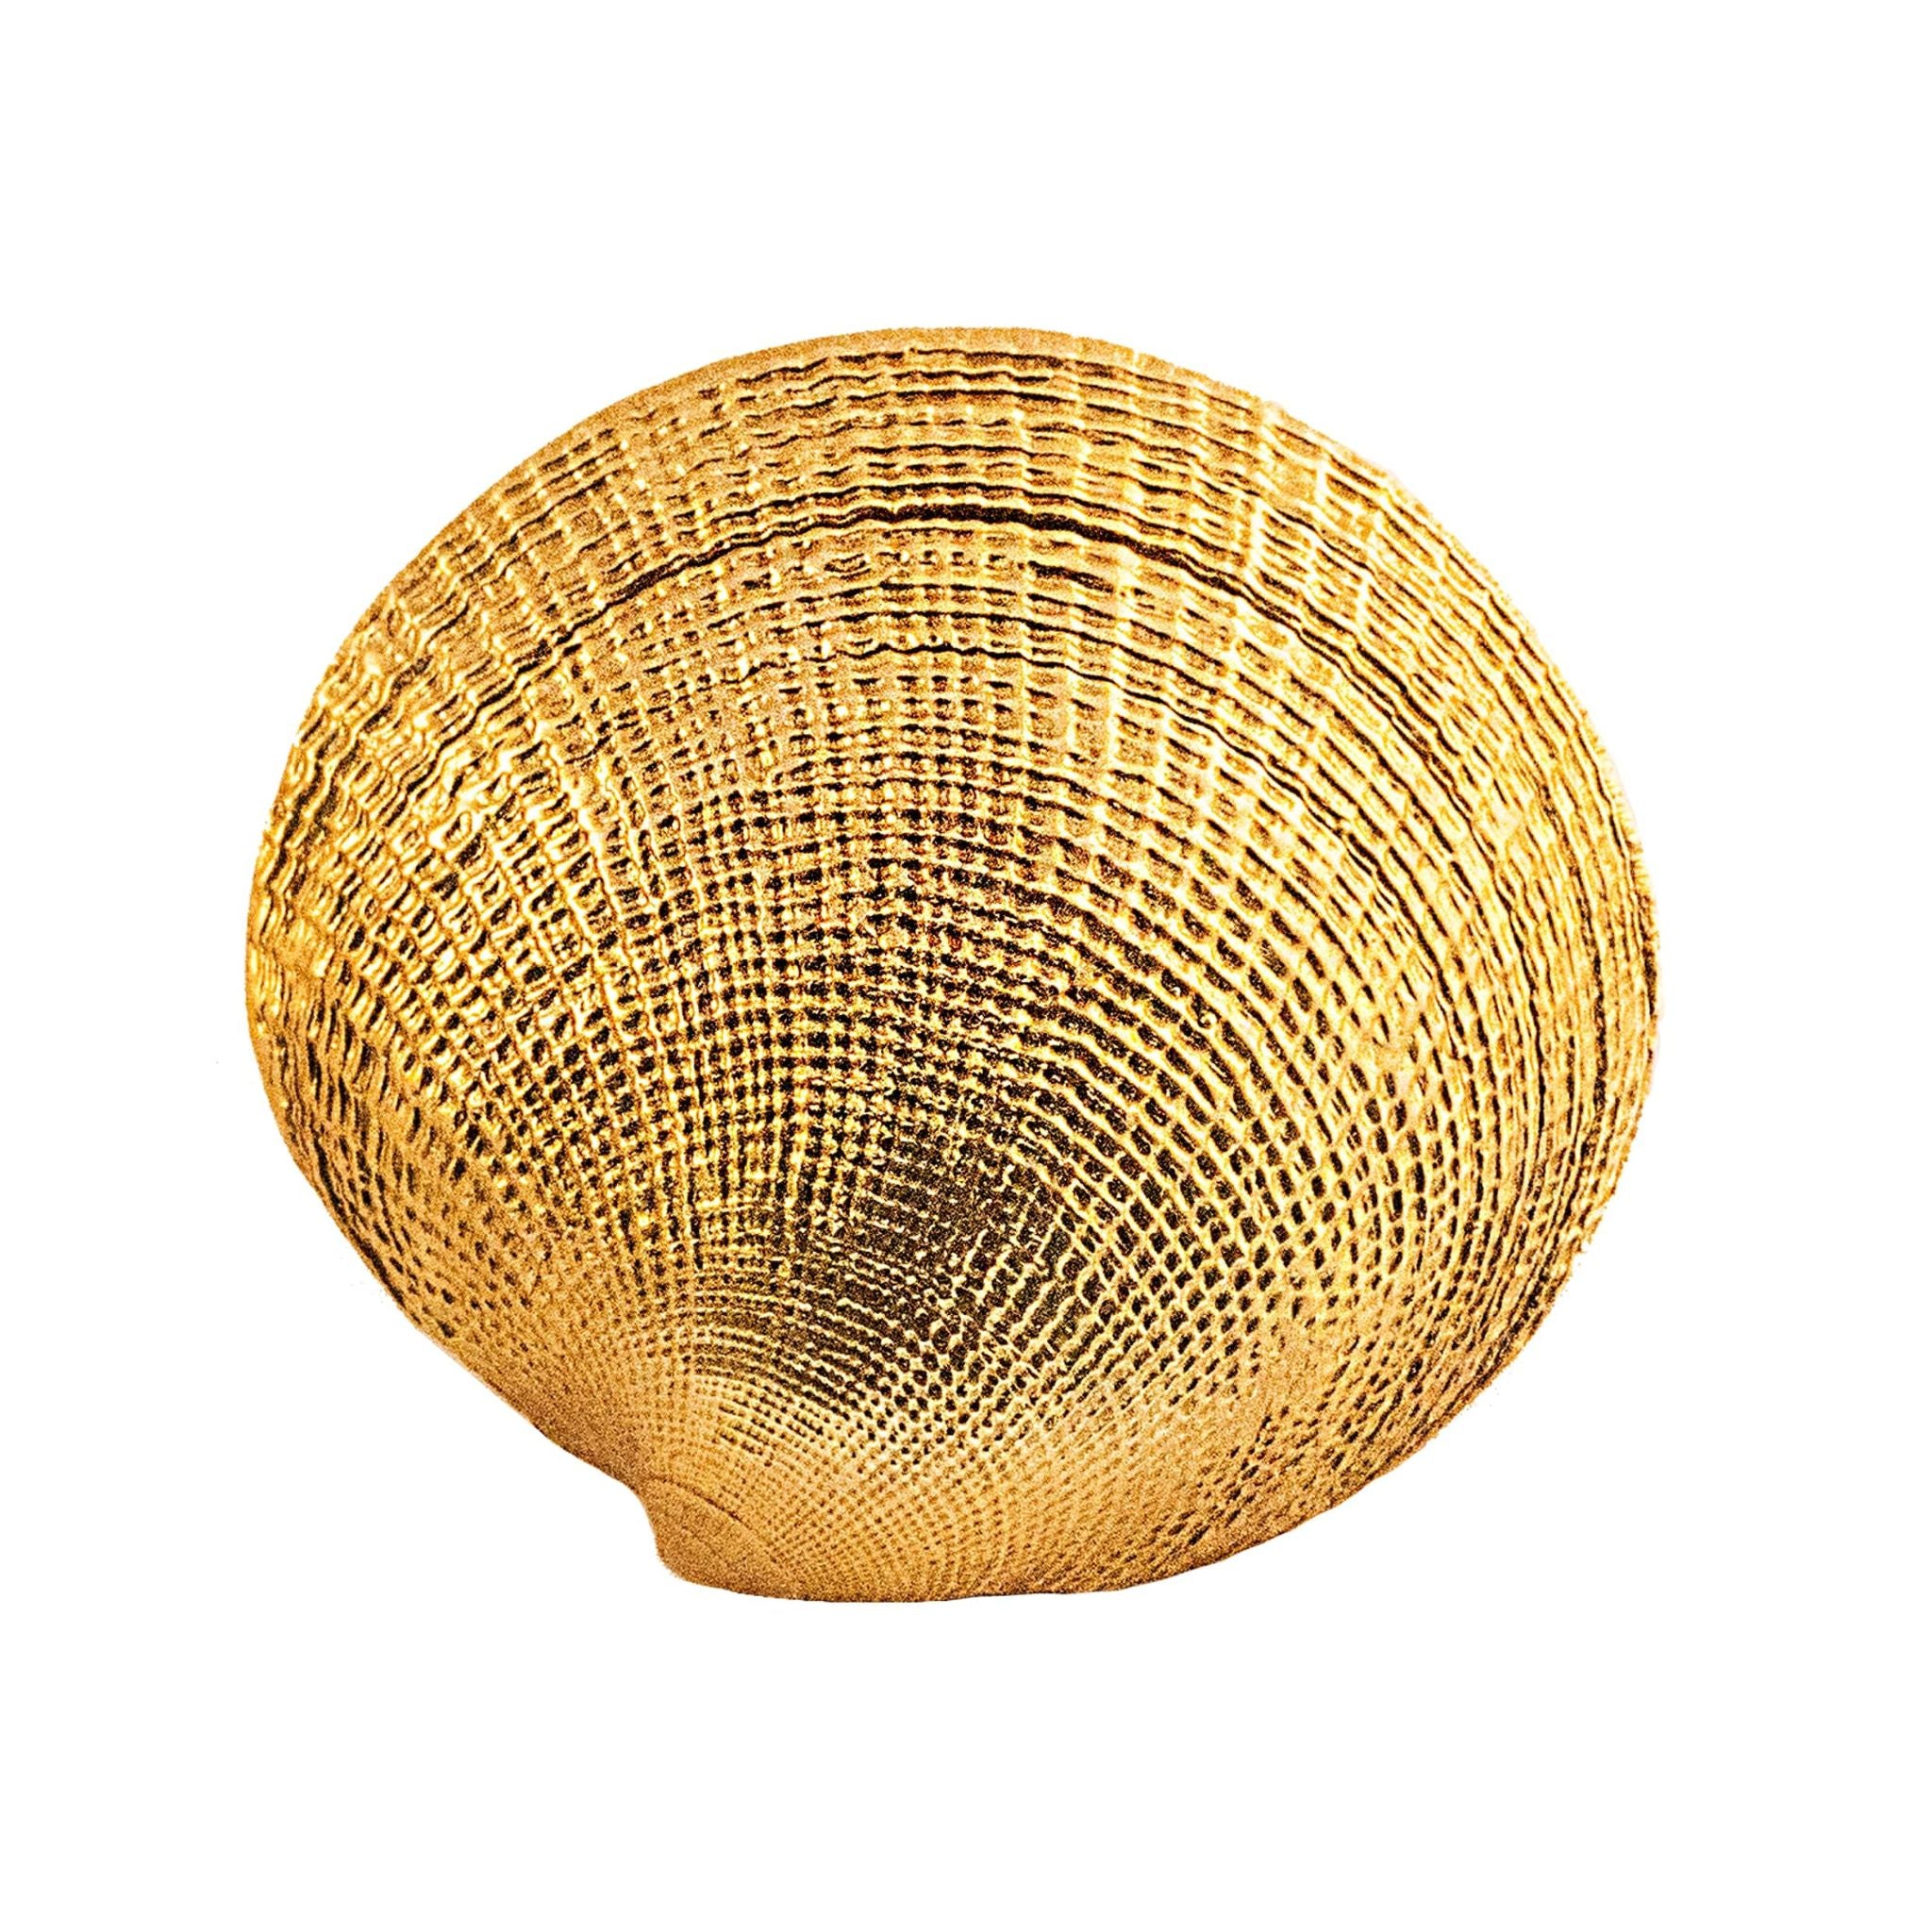 A large brass knob shaped like a seashell.